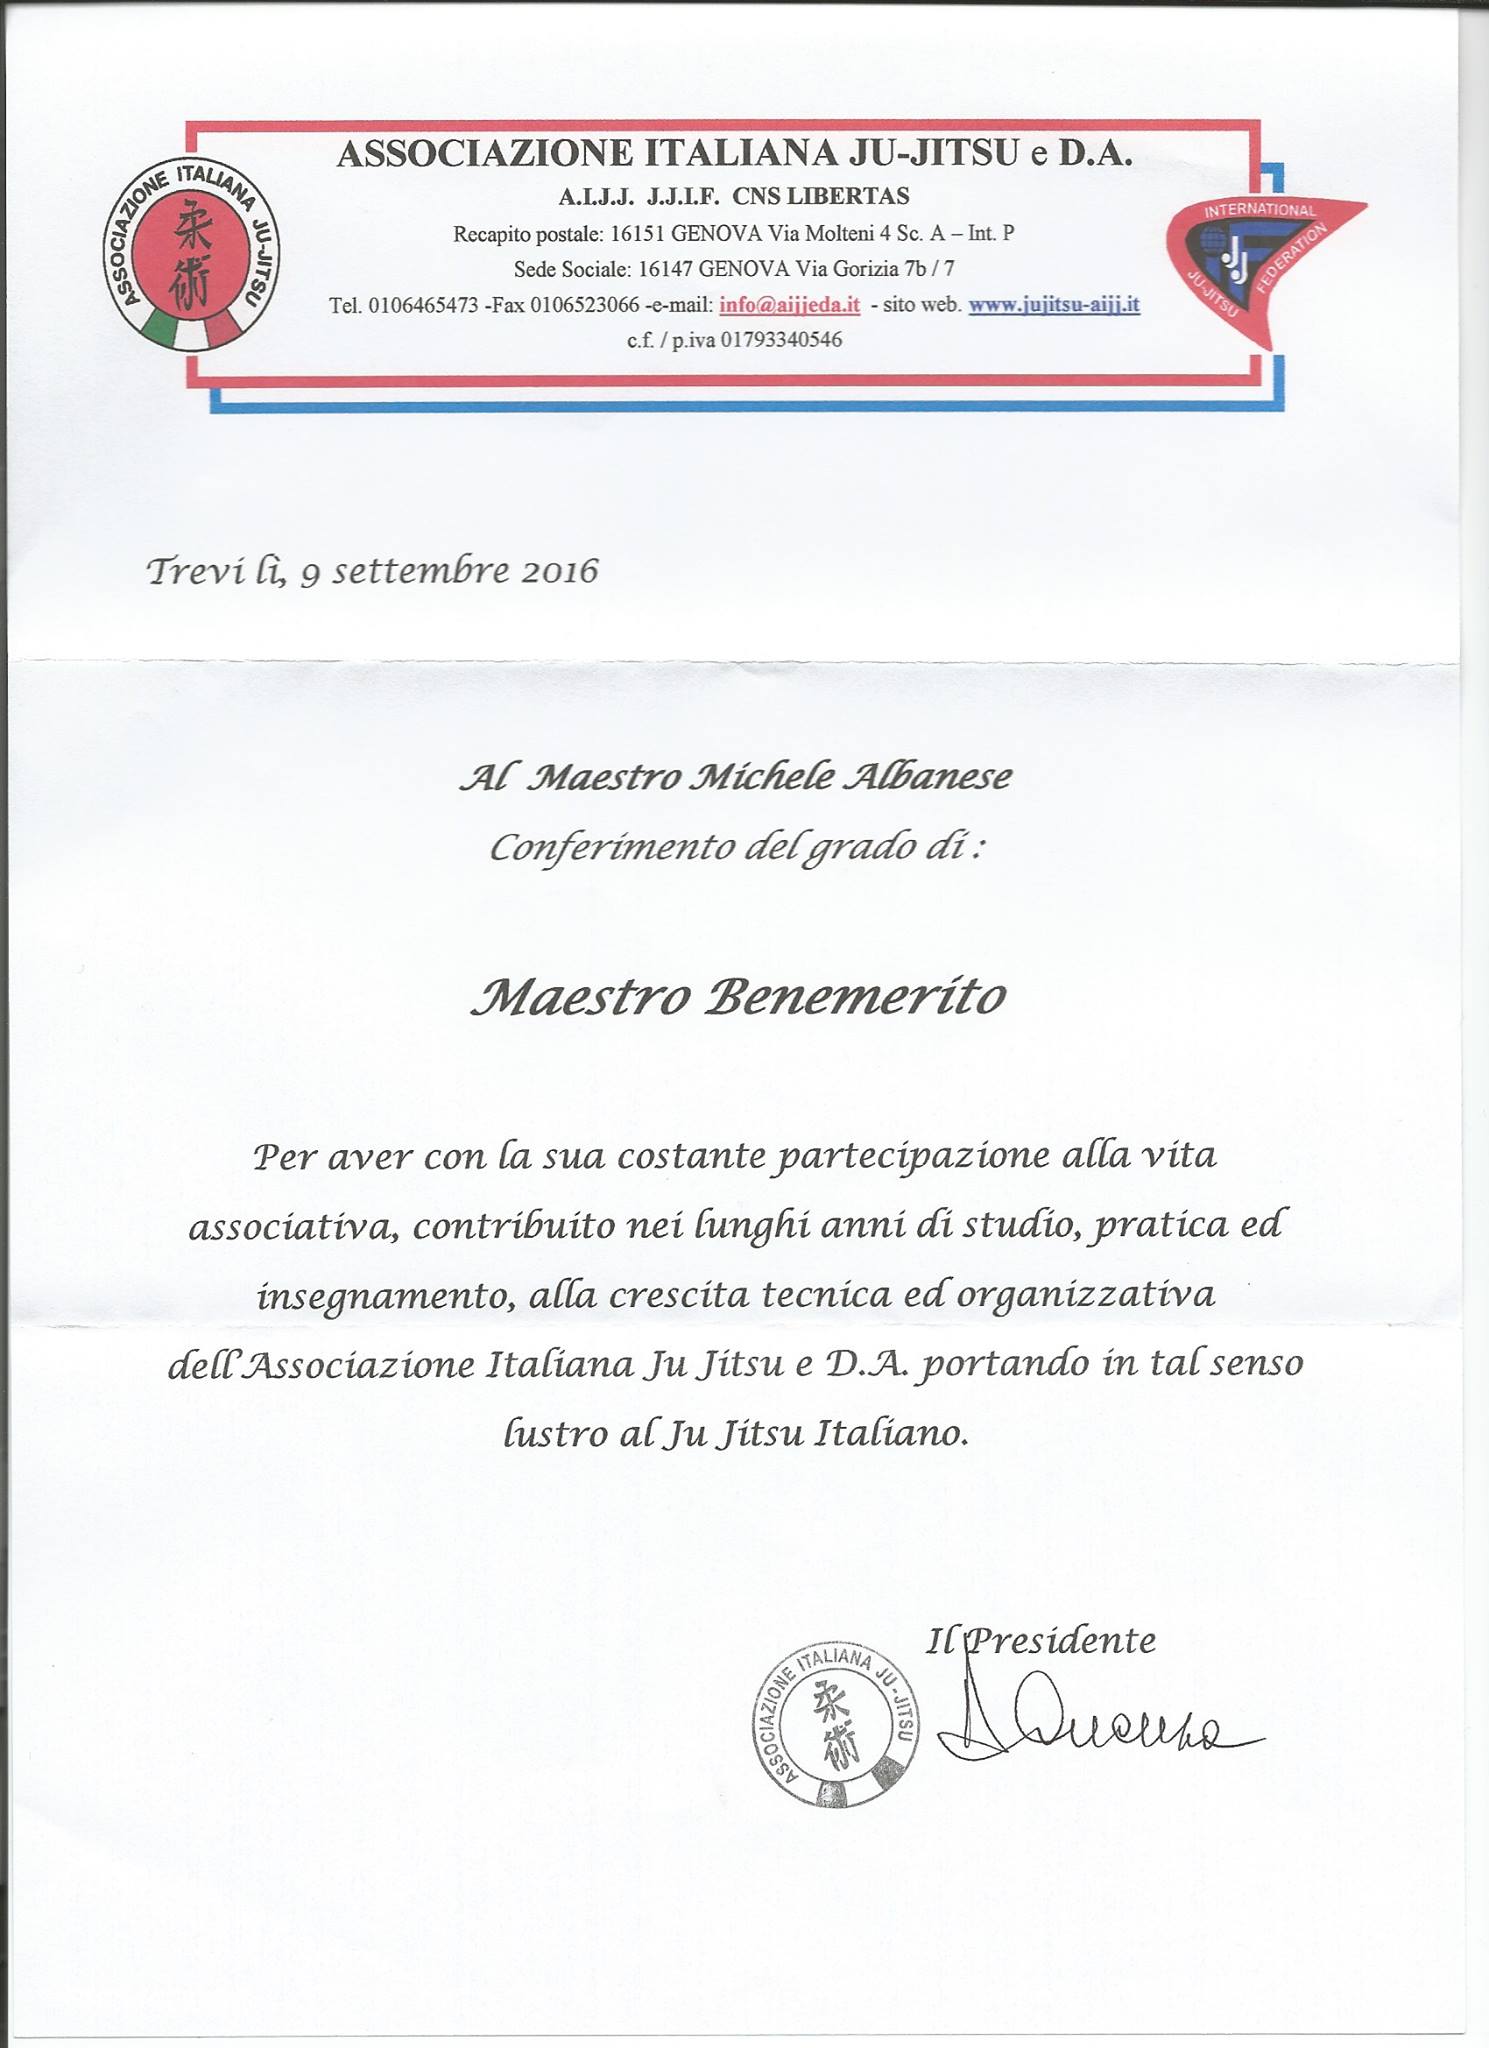 Conferimento al grado di Maestro Benemerito al Maestro Michele Albanese